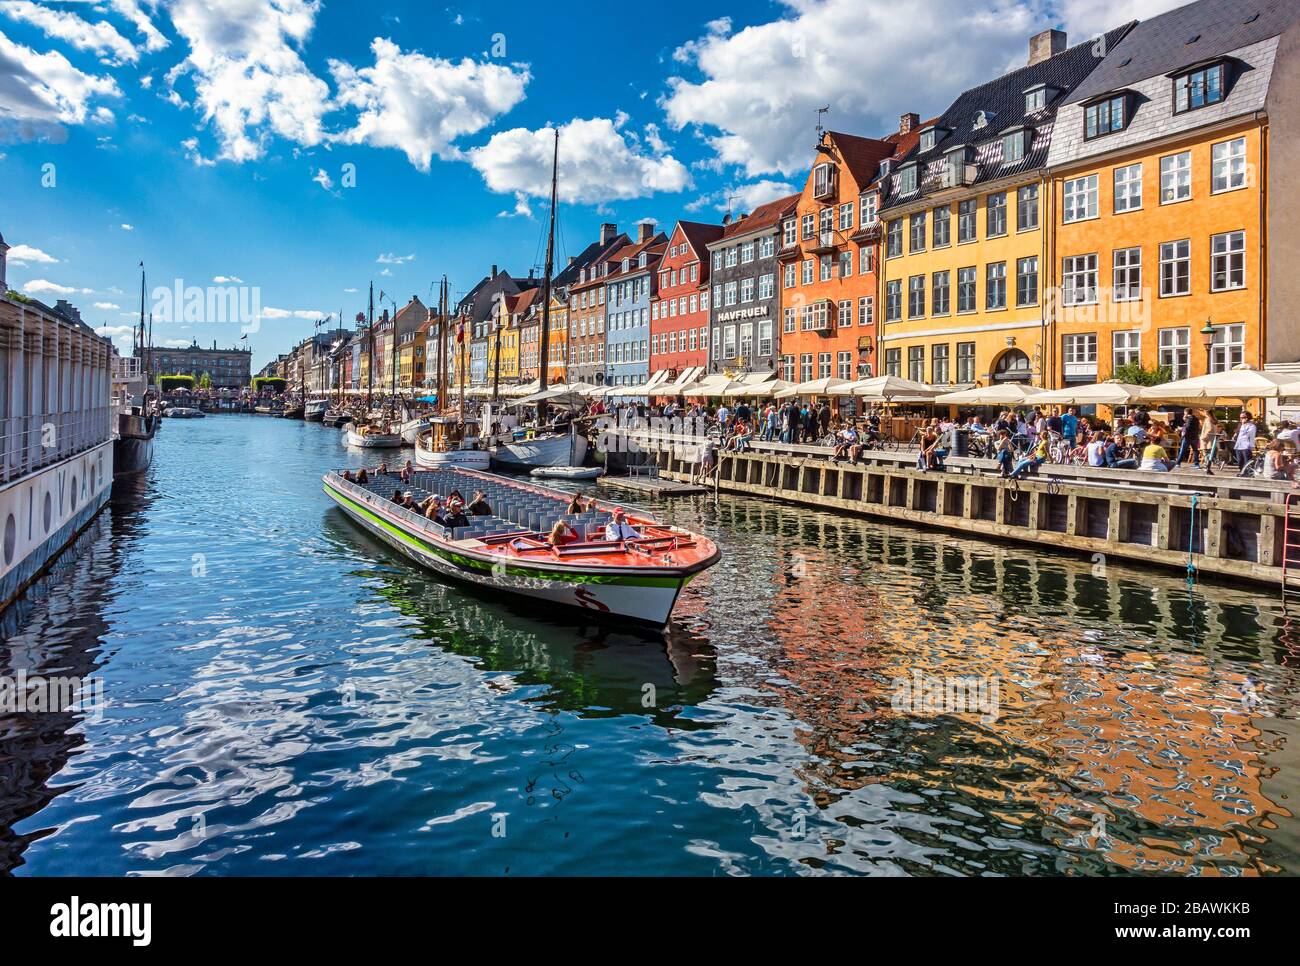 Bateau de tourisme sur le canal partant de Nyhavn dans le port de Copenhague Danemark avec les restaurants pleins de clients en début de soirée ensoleillée. Banque D'Images